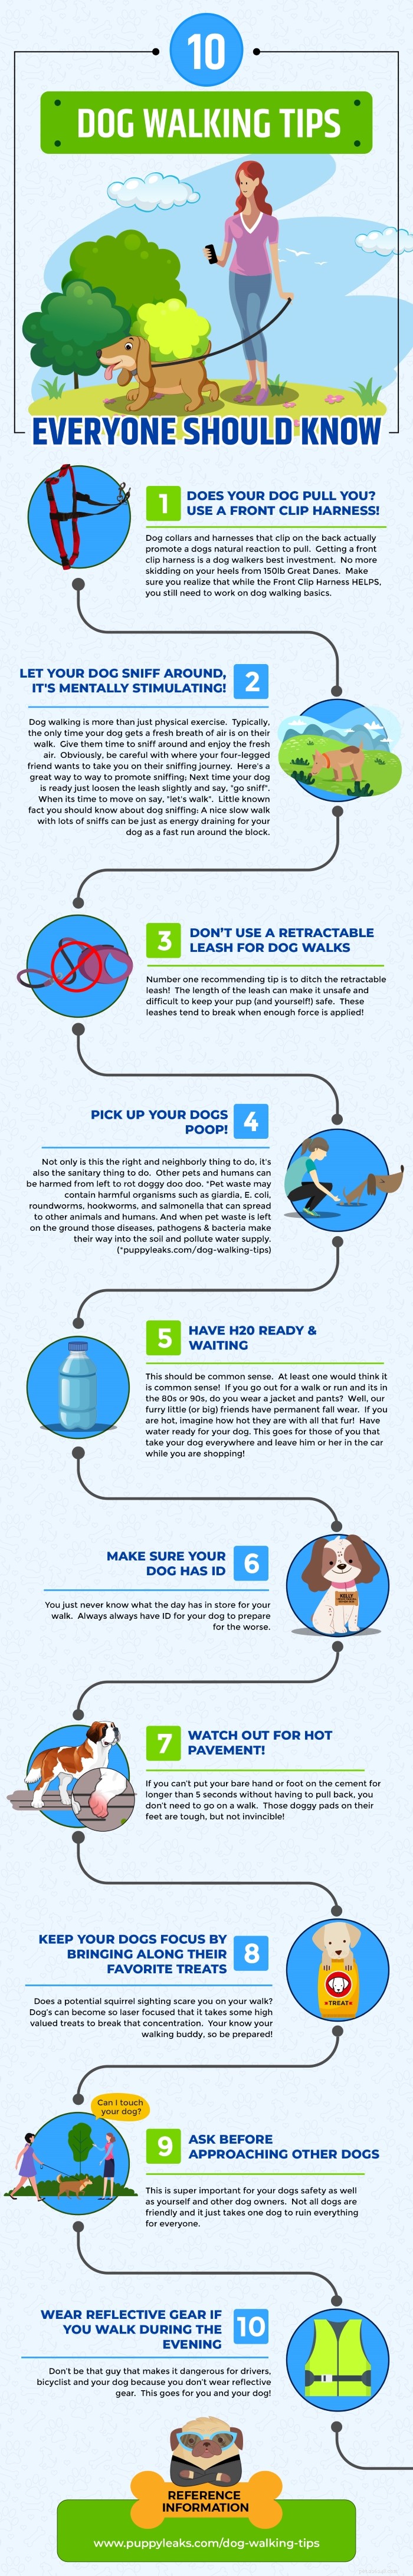 10 tips voor het uitlaten van honden die iedereen zou moeten weten